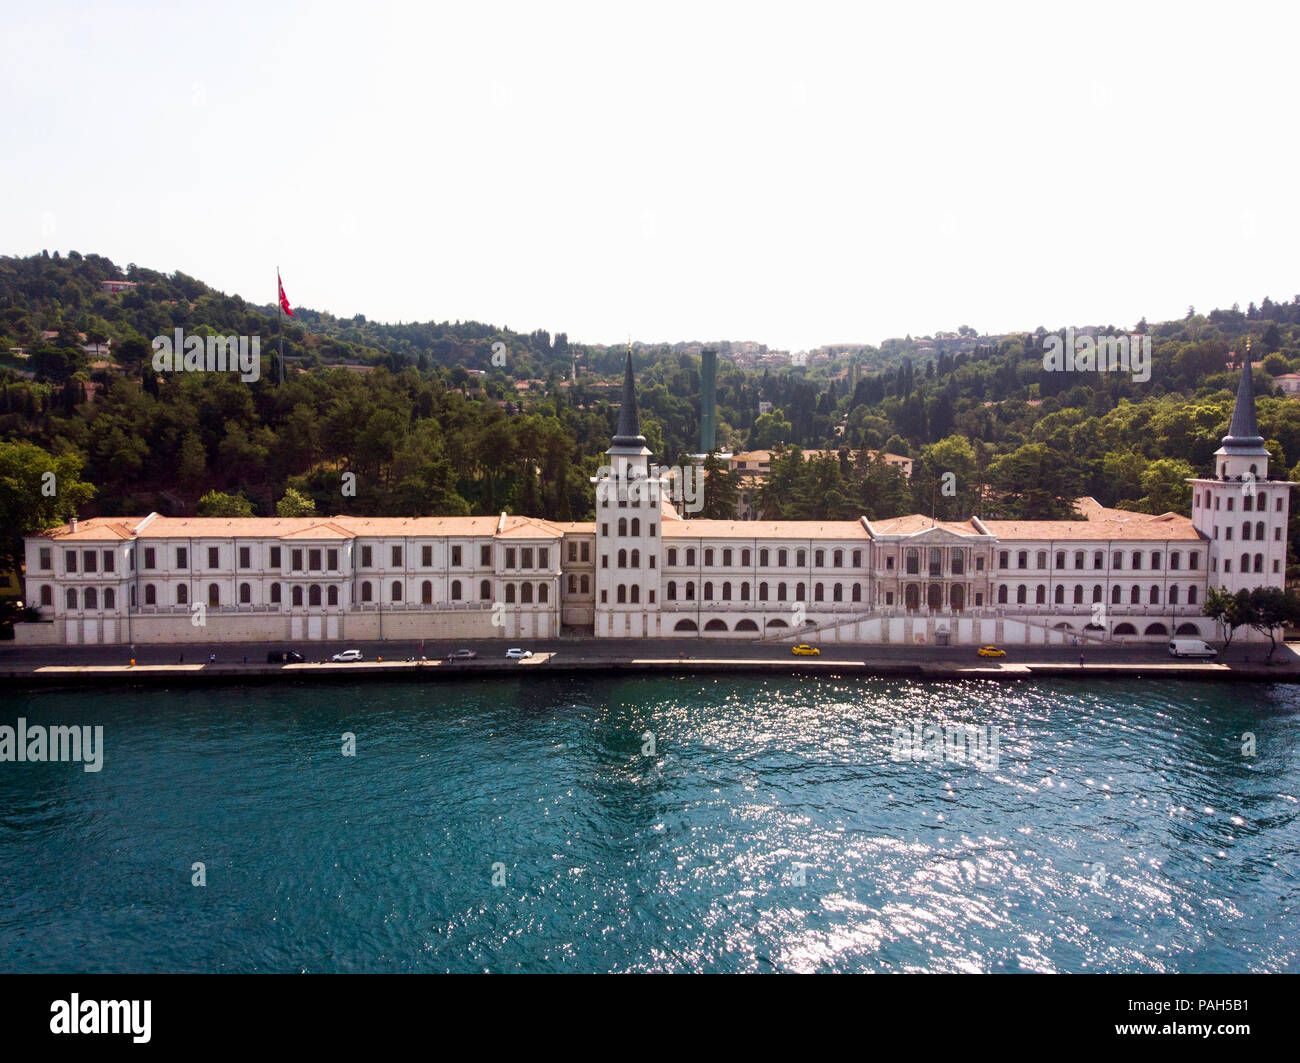 Vista aerea del Kuleli Liceo Militare nella città di Istanbul, Turchia. Edificio storico. Foto Stock